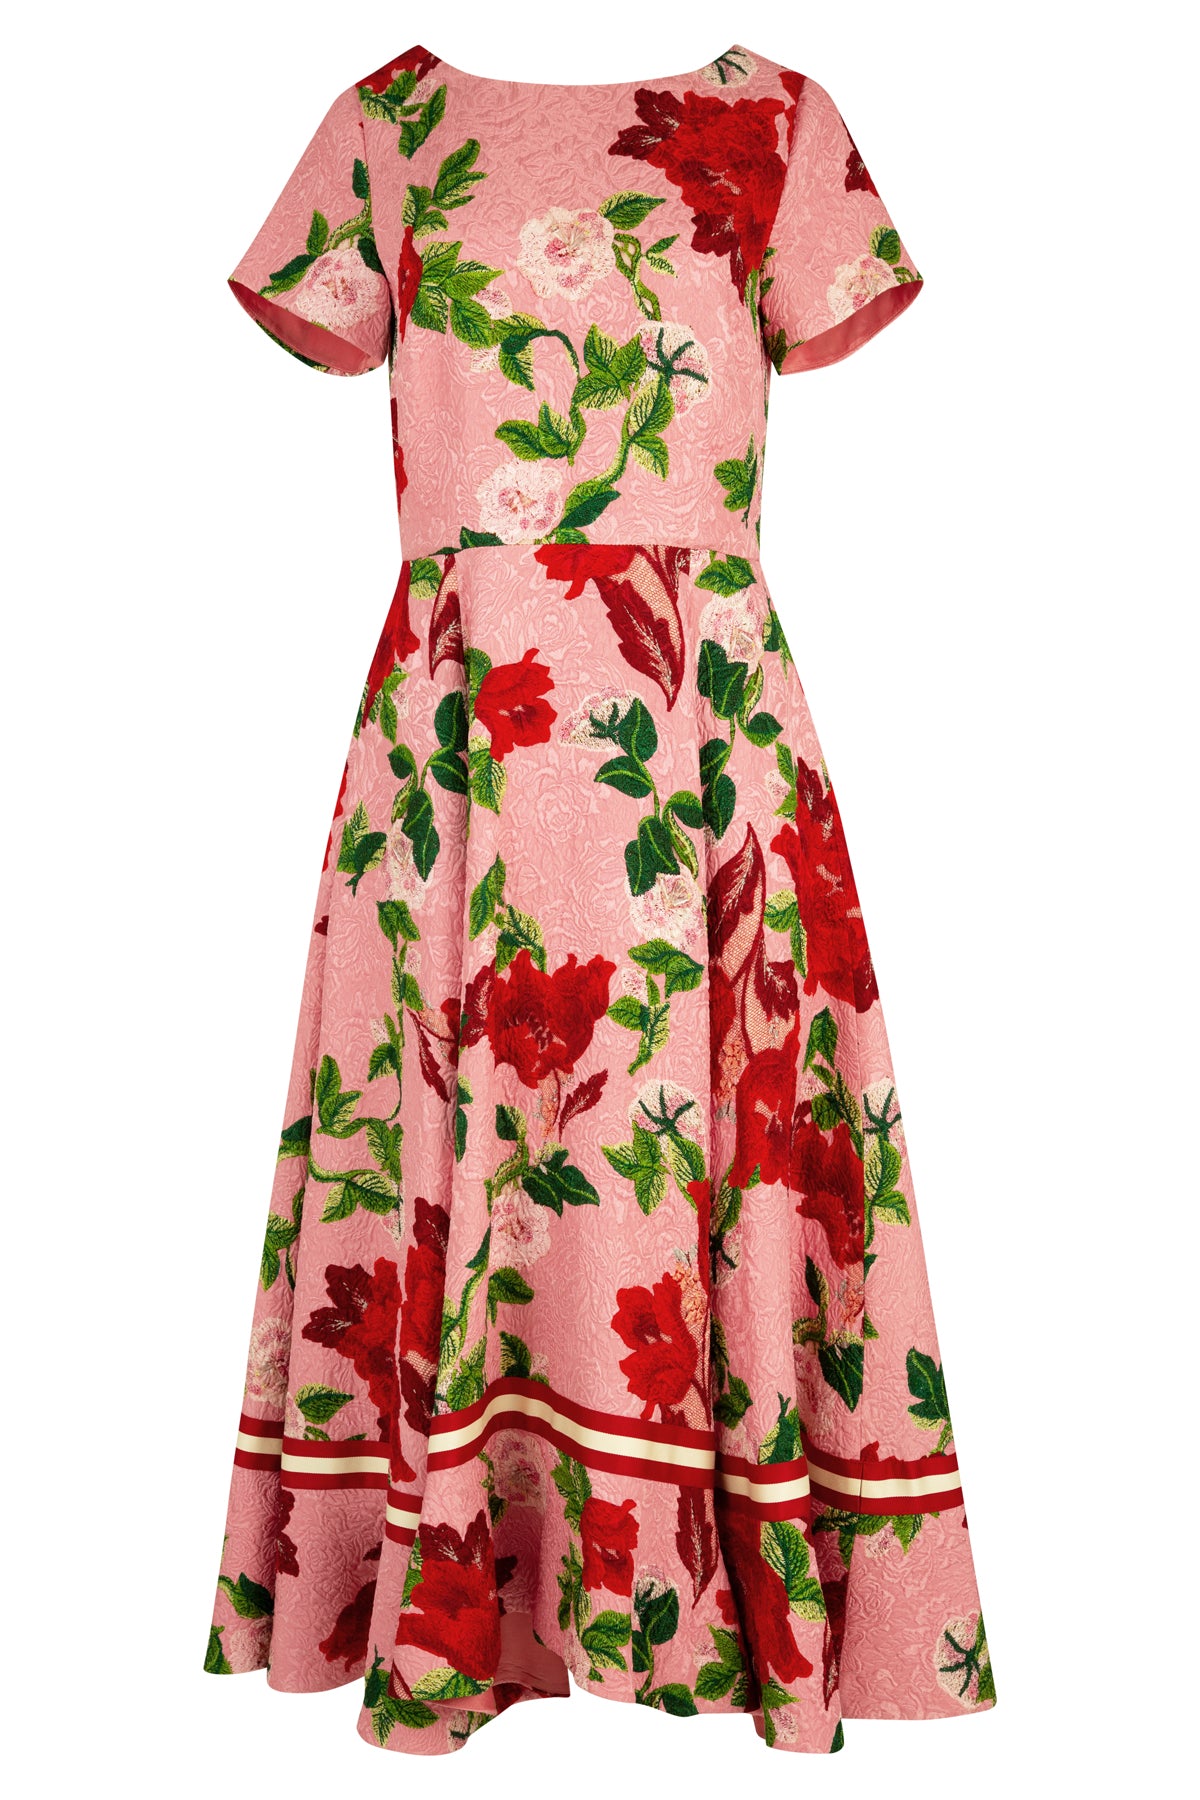 Trelise Cooper - Marilyn Monrose Dress